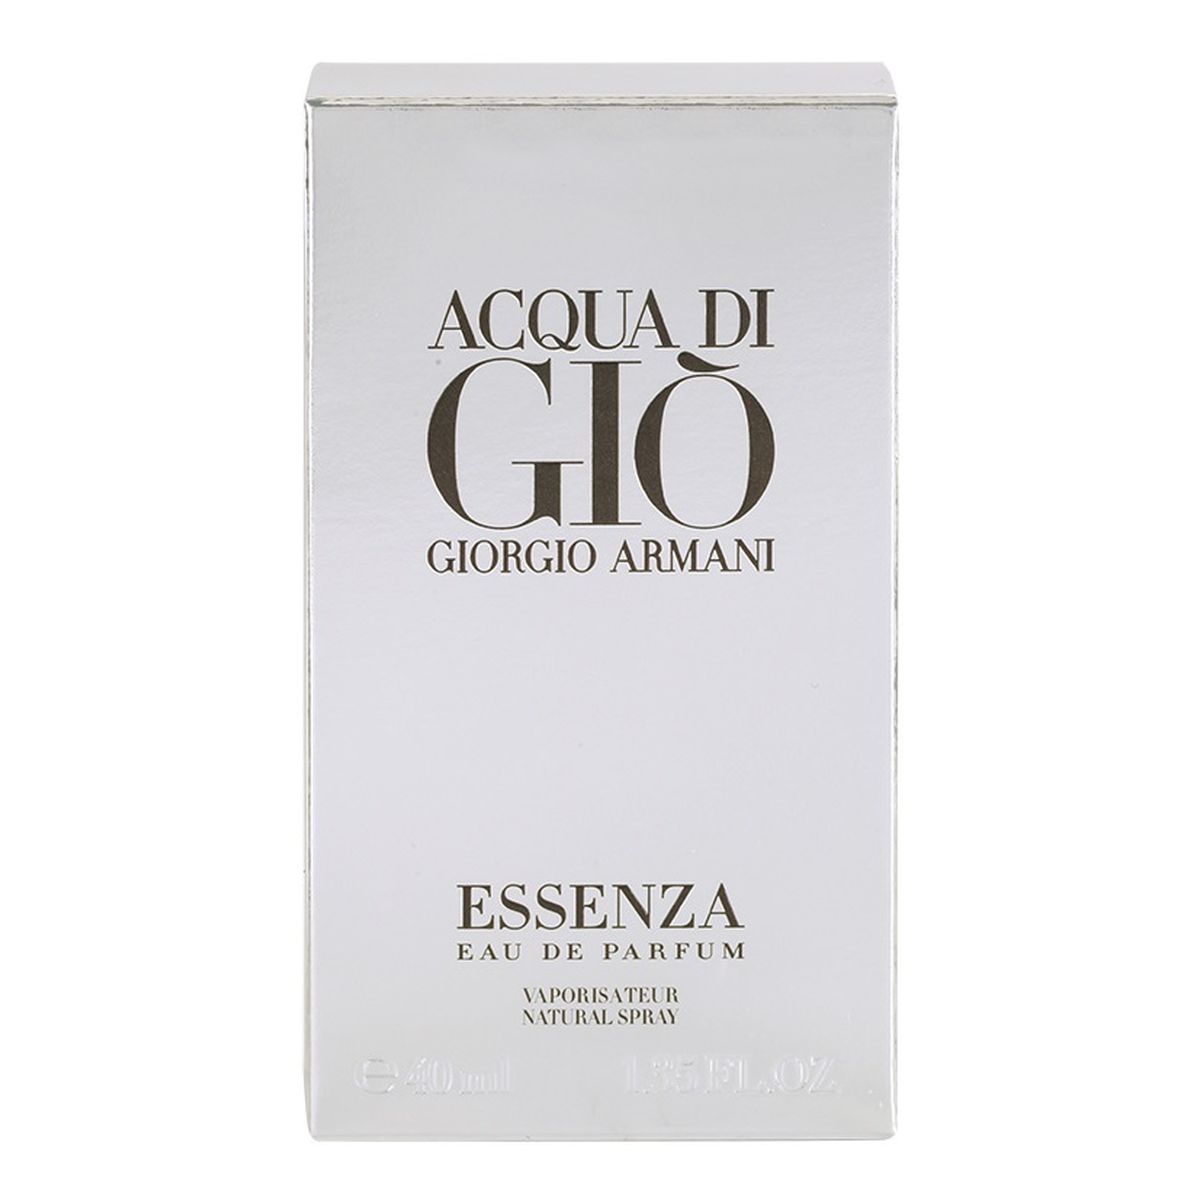 Giorgio Armani Acqua di Gio Essenza Woda perfumowana spray 40ml